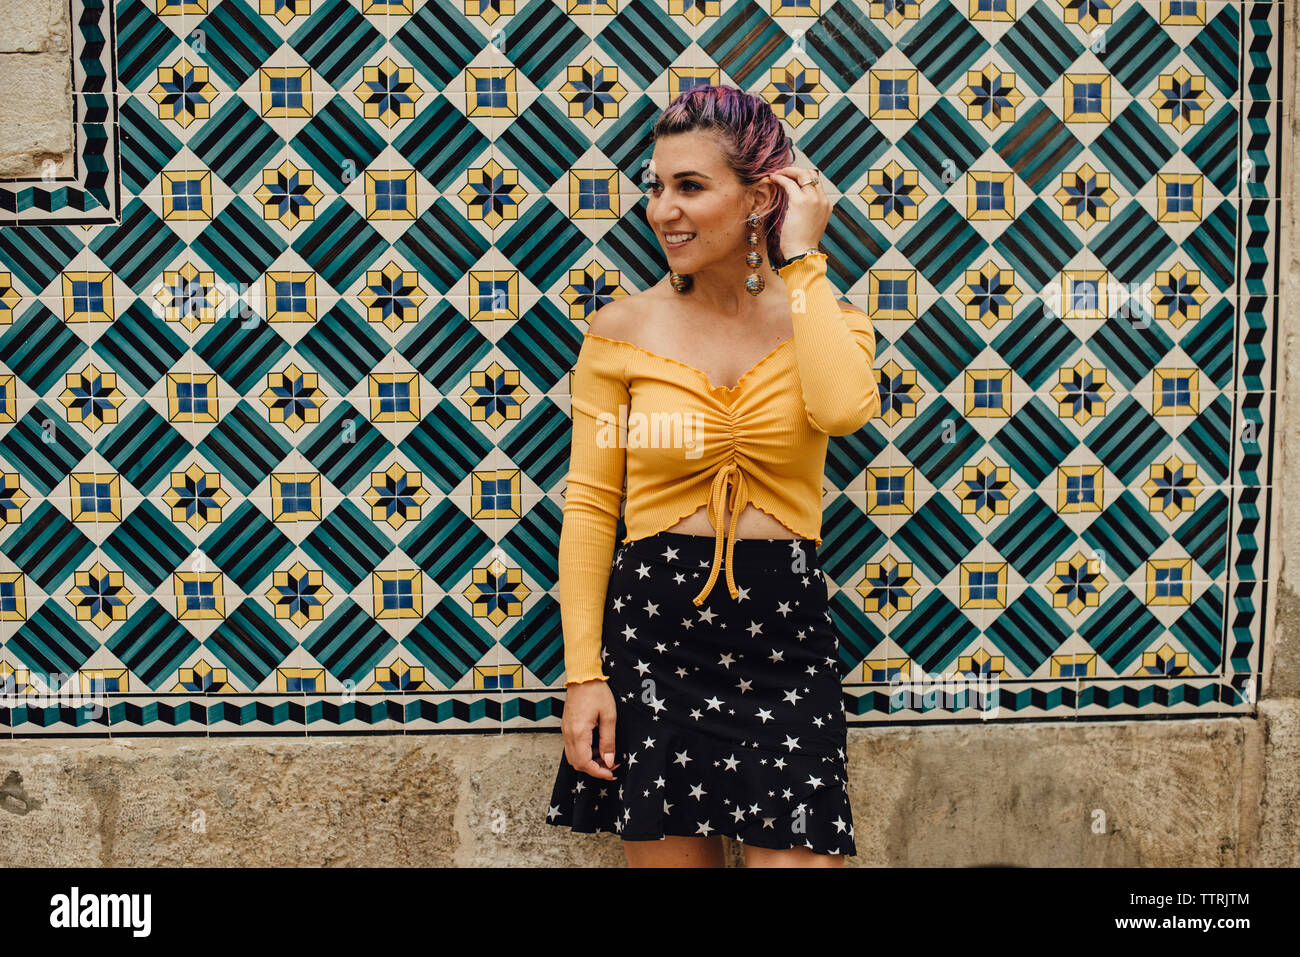 Jeune femme au mur recouvert de carreaux portugais Banque D'Images